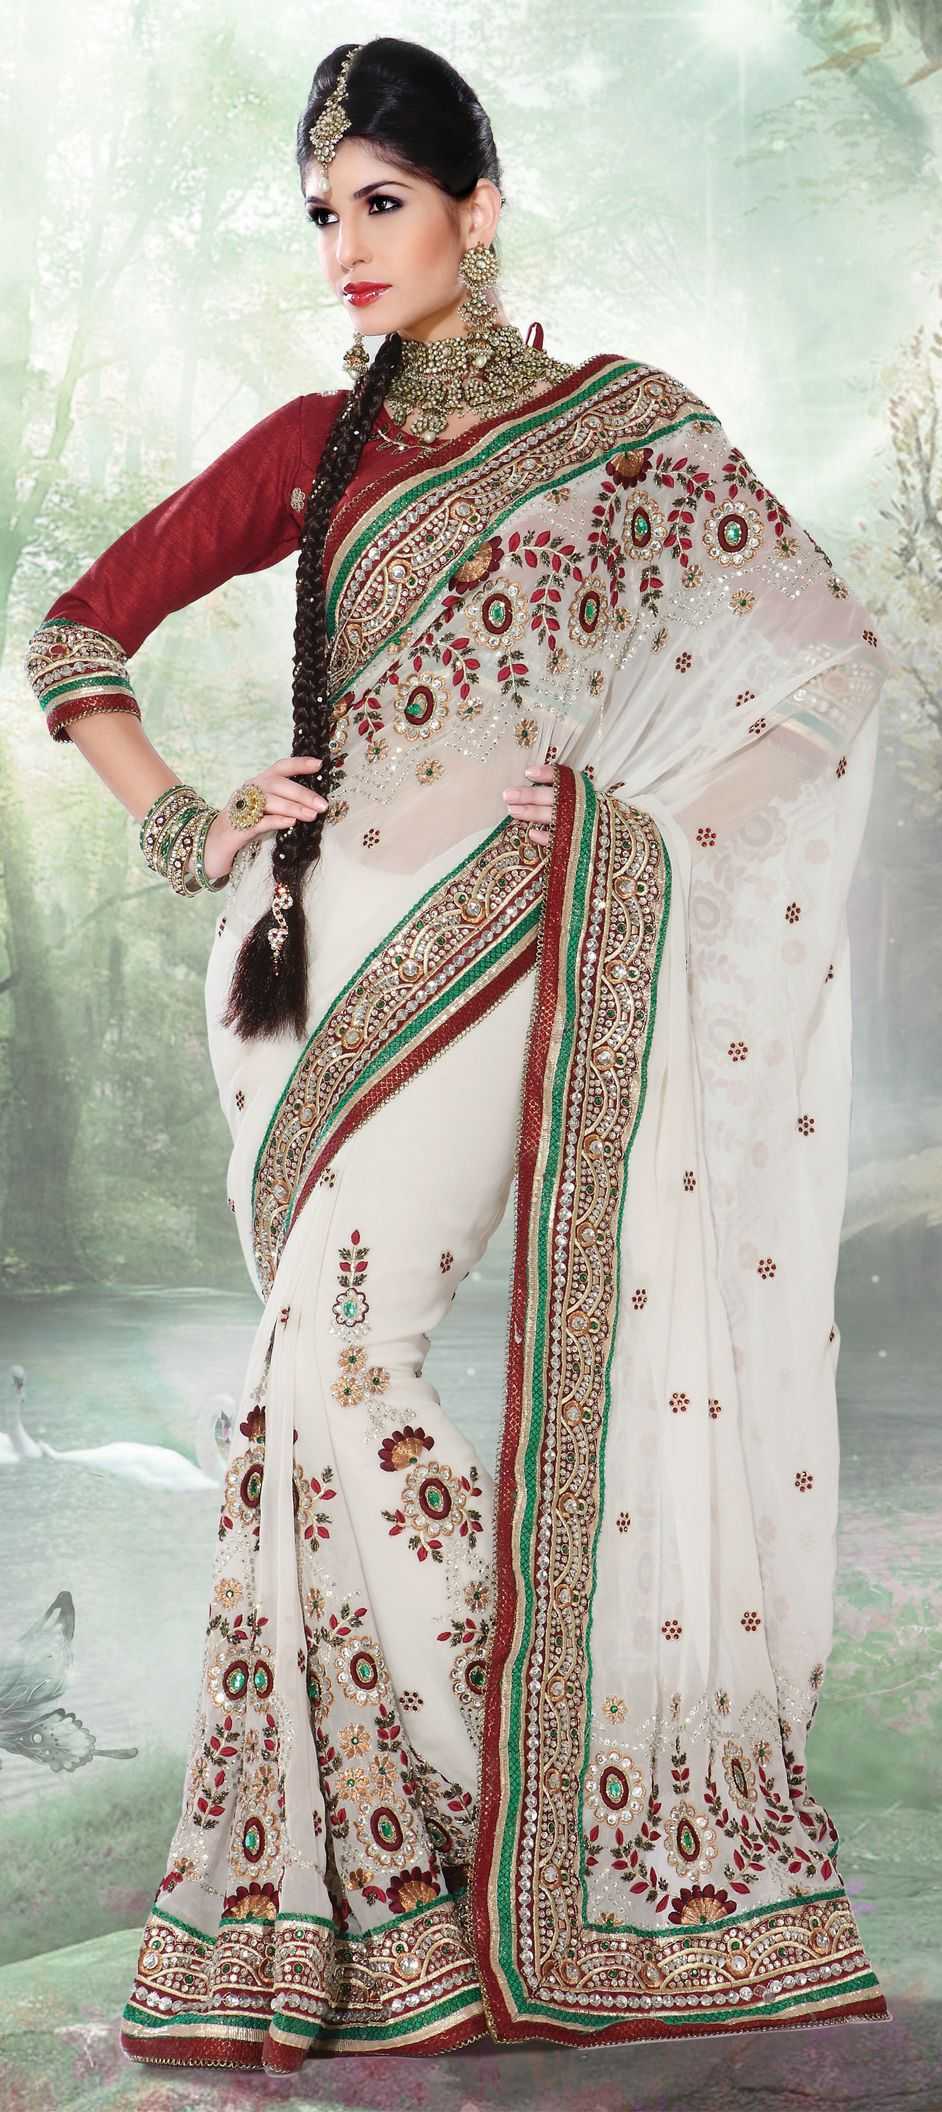 Индийская одежда для женщин всегда отличалась яркими расцветками и утонченными материалами Какова история древняя традиционная одежда в Индии Модные тенденции в инди стайл